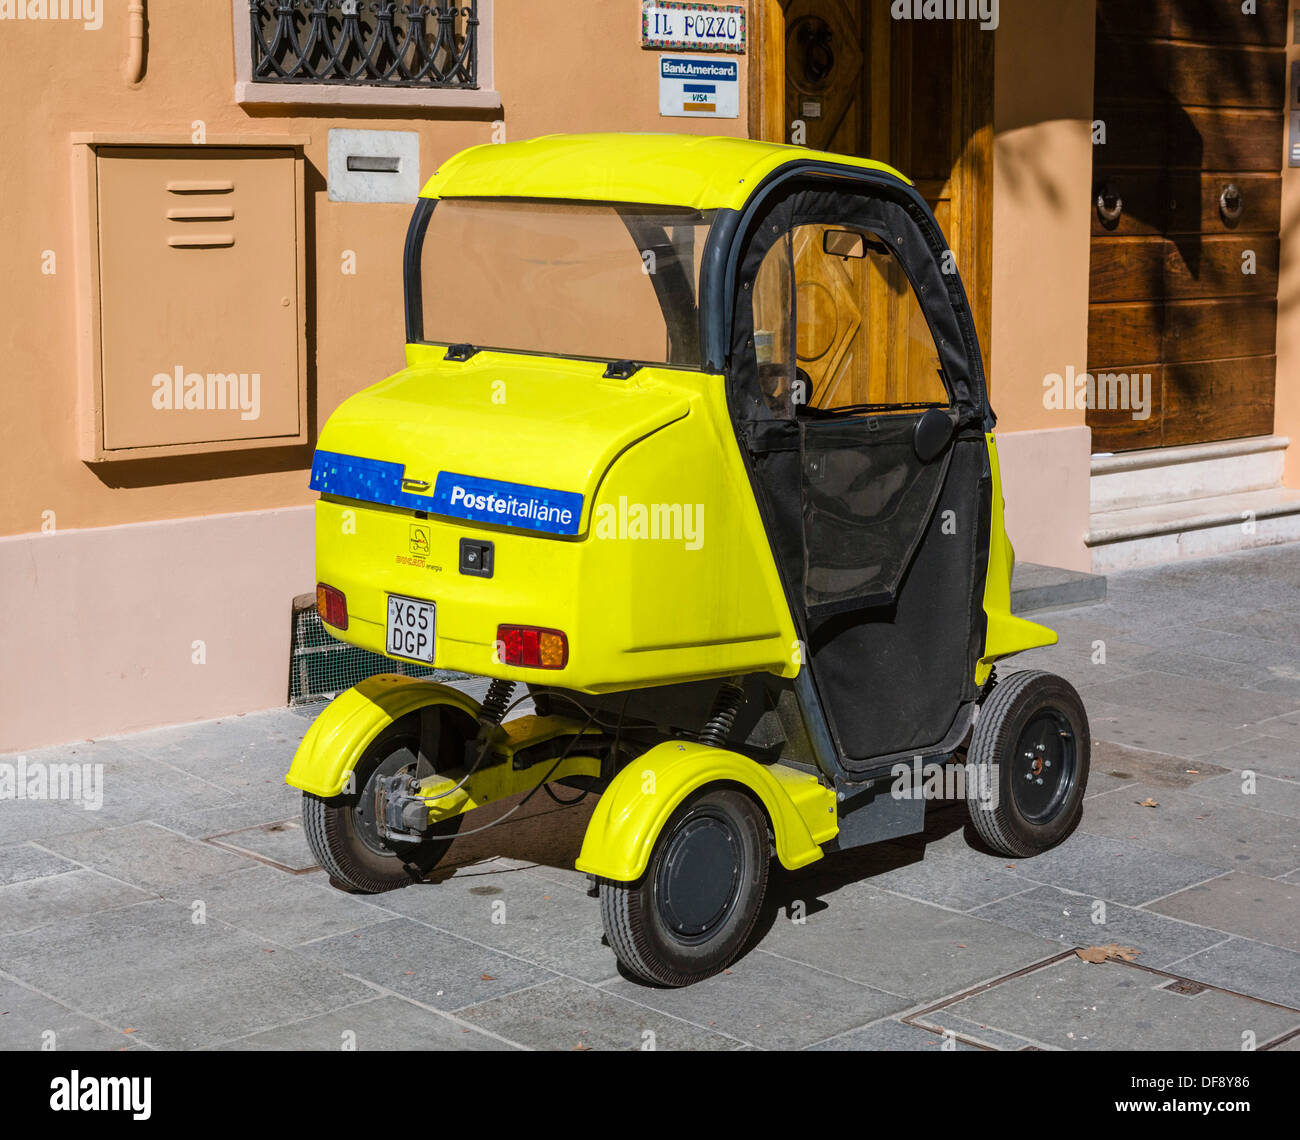 Poste Italiane electric buggy in Reggio Emilia, Emilia Romagna, Italy Stock Photo